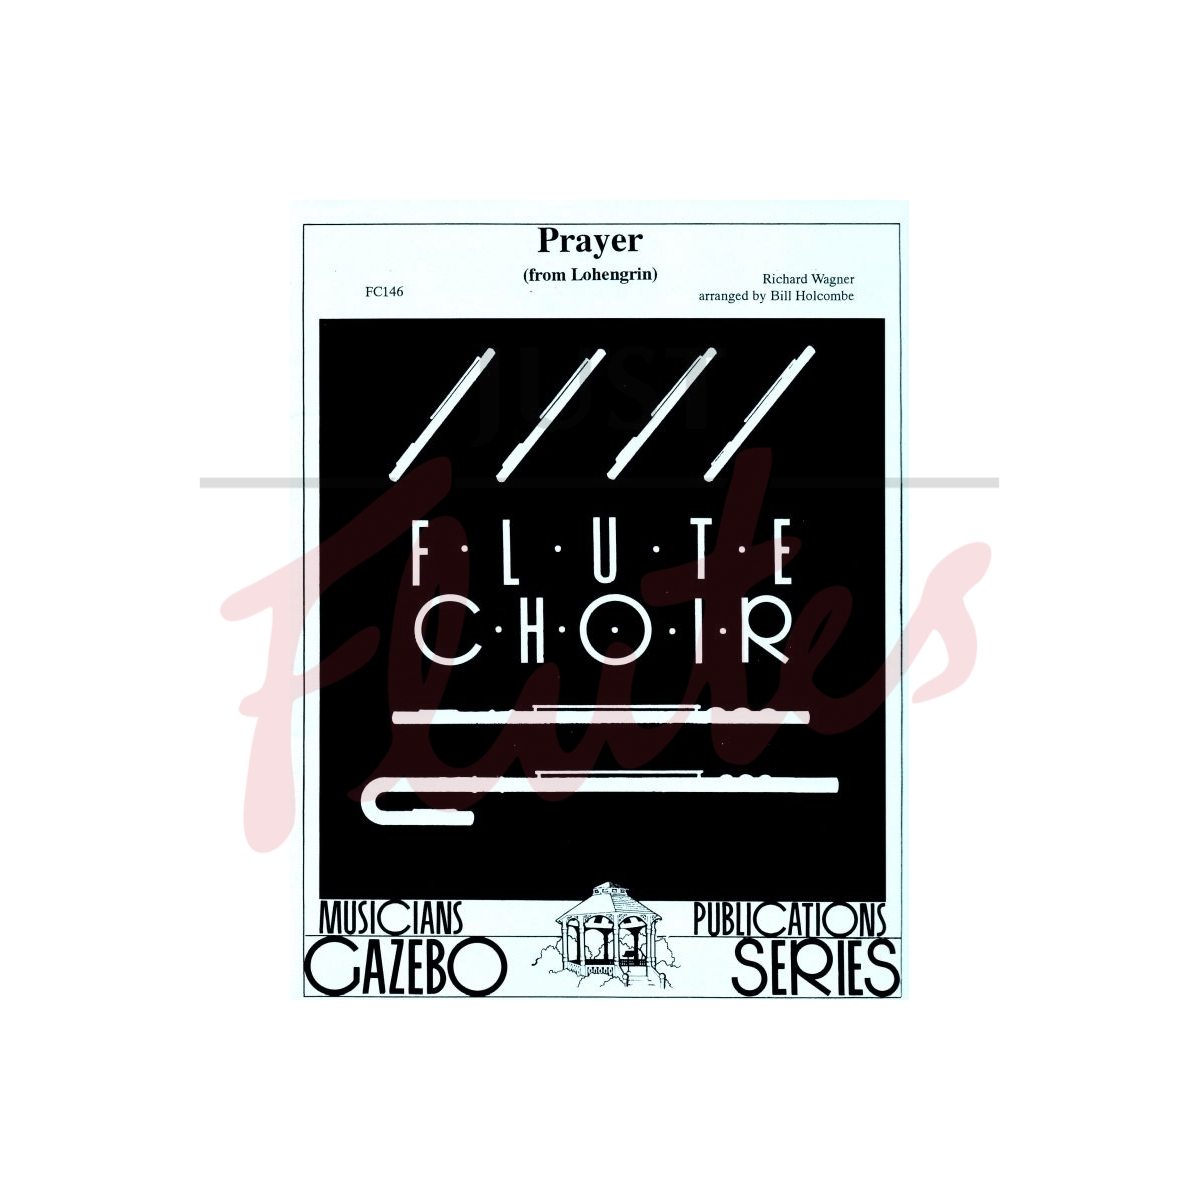 Prayer (from Lohengrin) [Flute Choir]